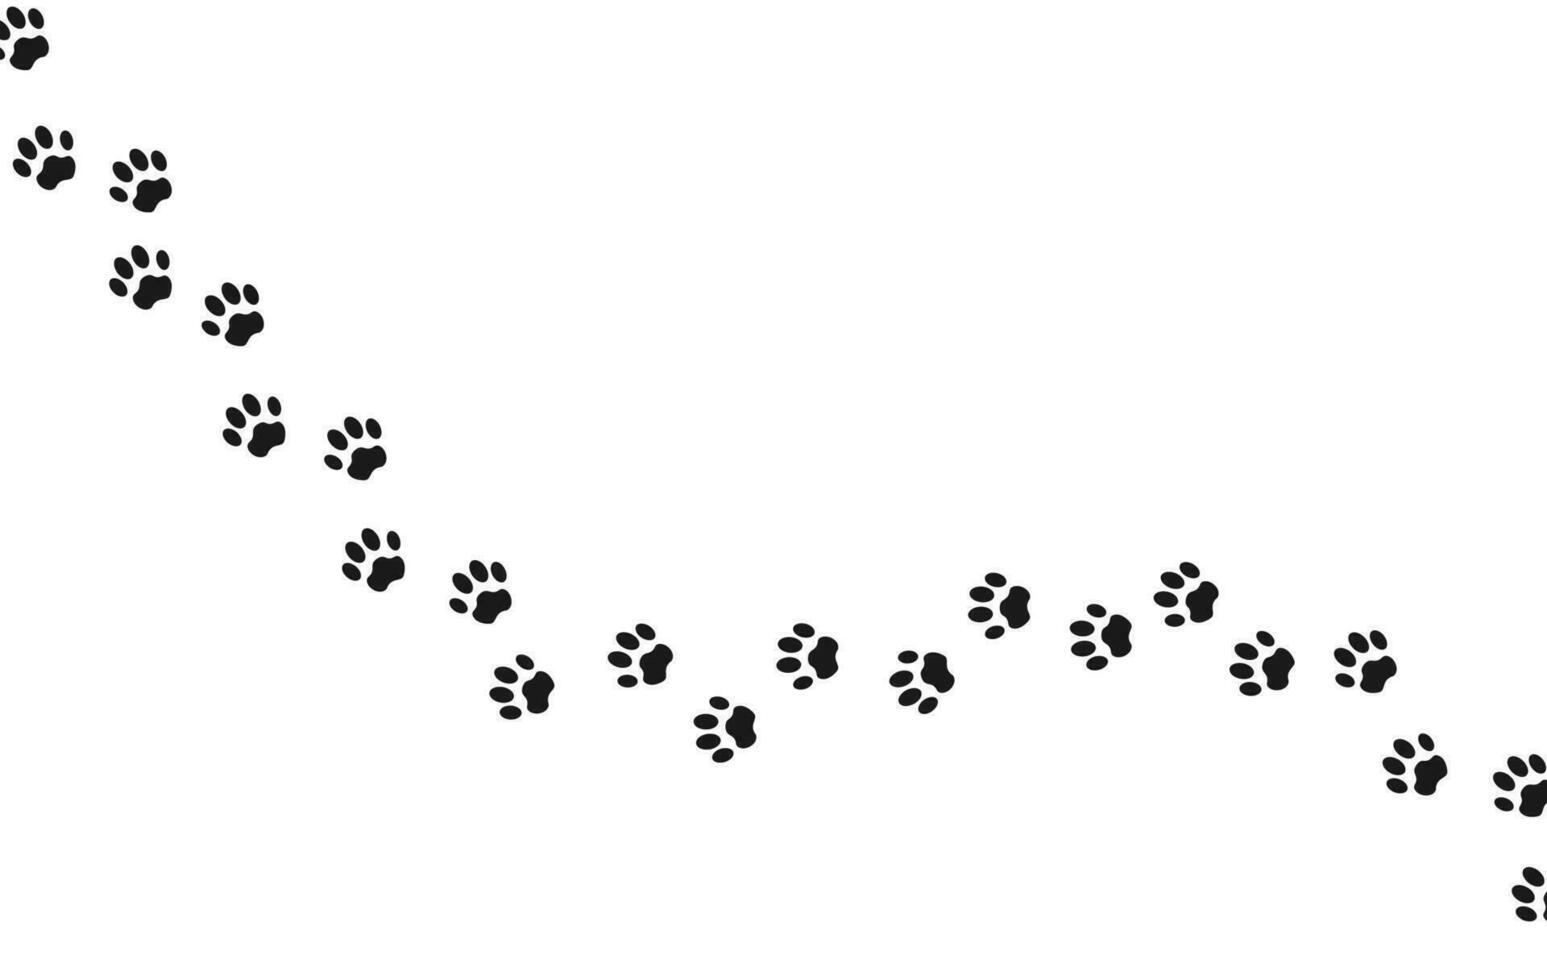 fotspår för sällskapsdjur, hund eller katt. isolerat illustration på en vit bakgrund. vektor illustration